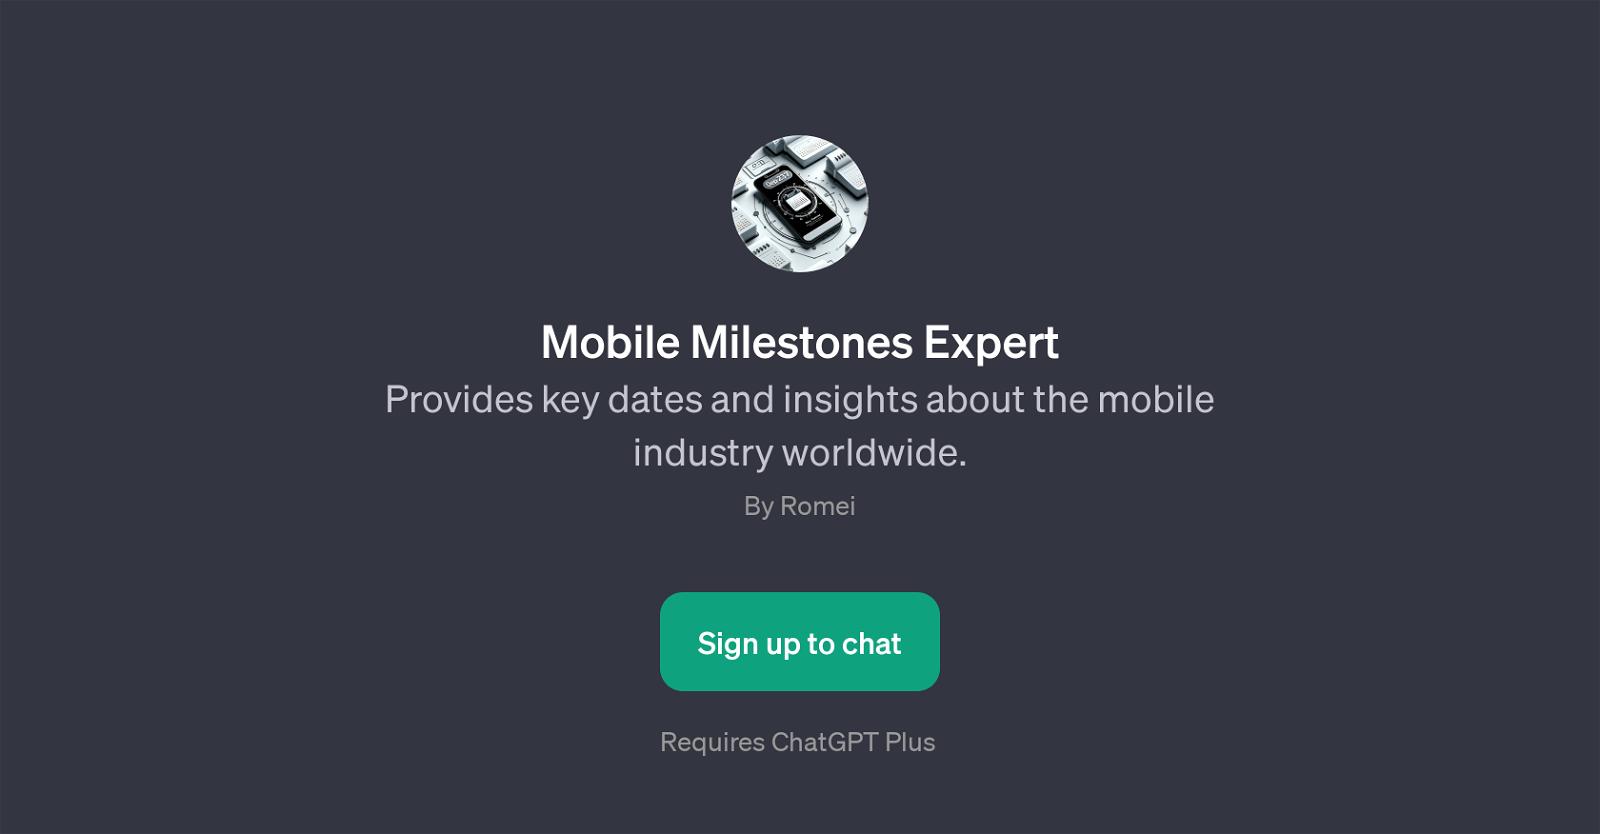 Mobile Milestones Expert website